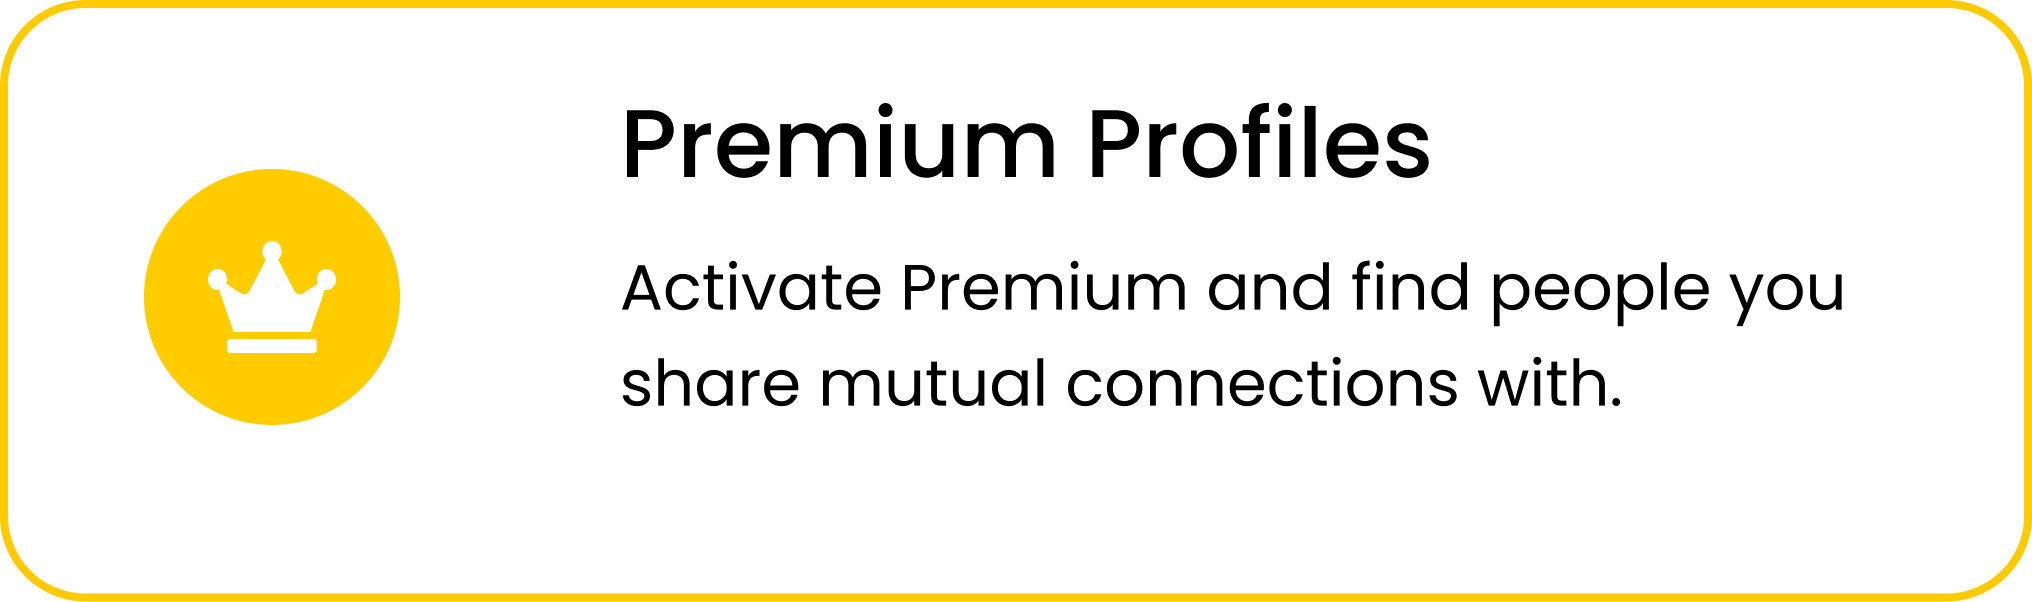 Premium Profile